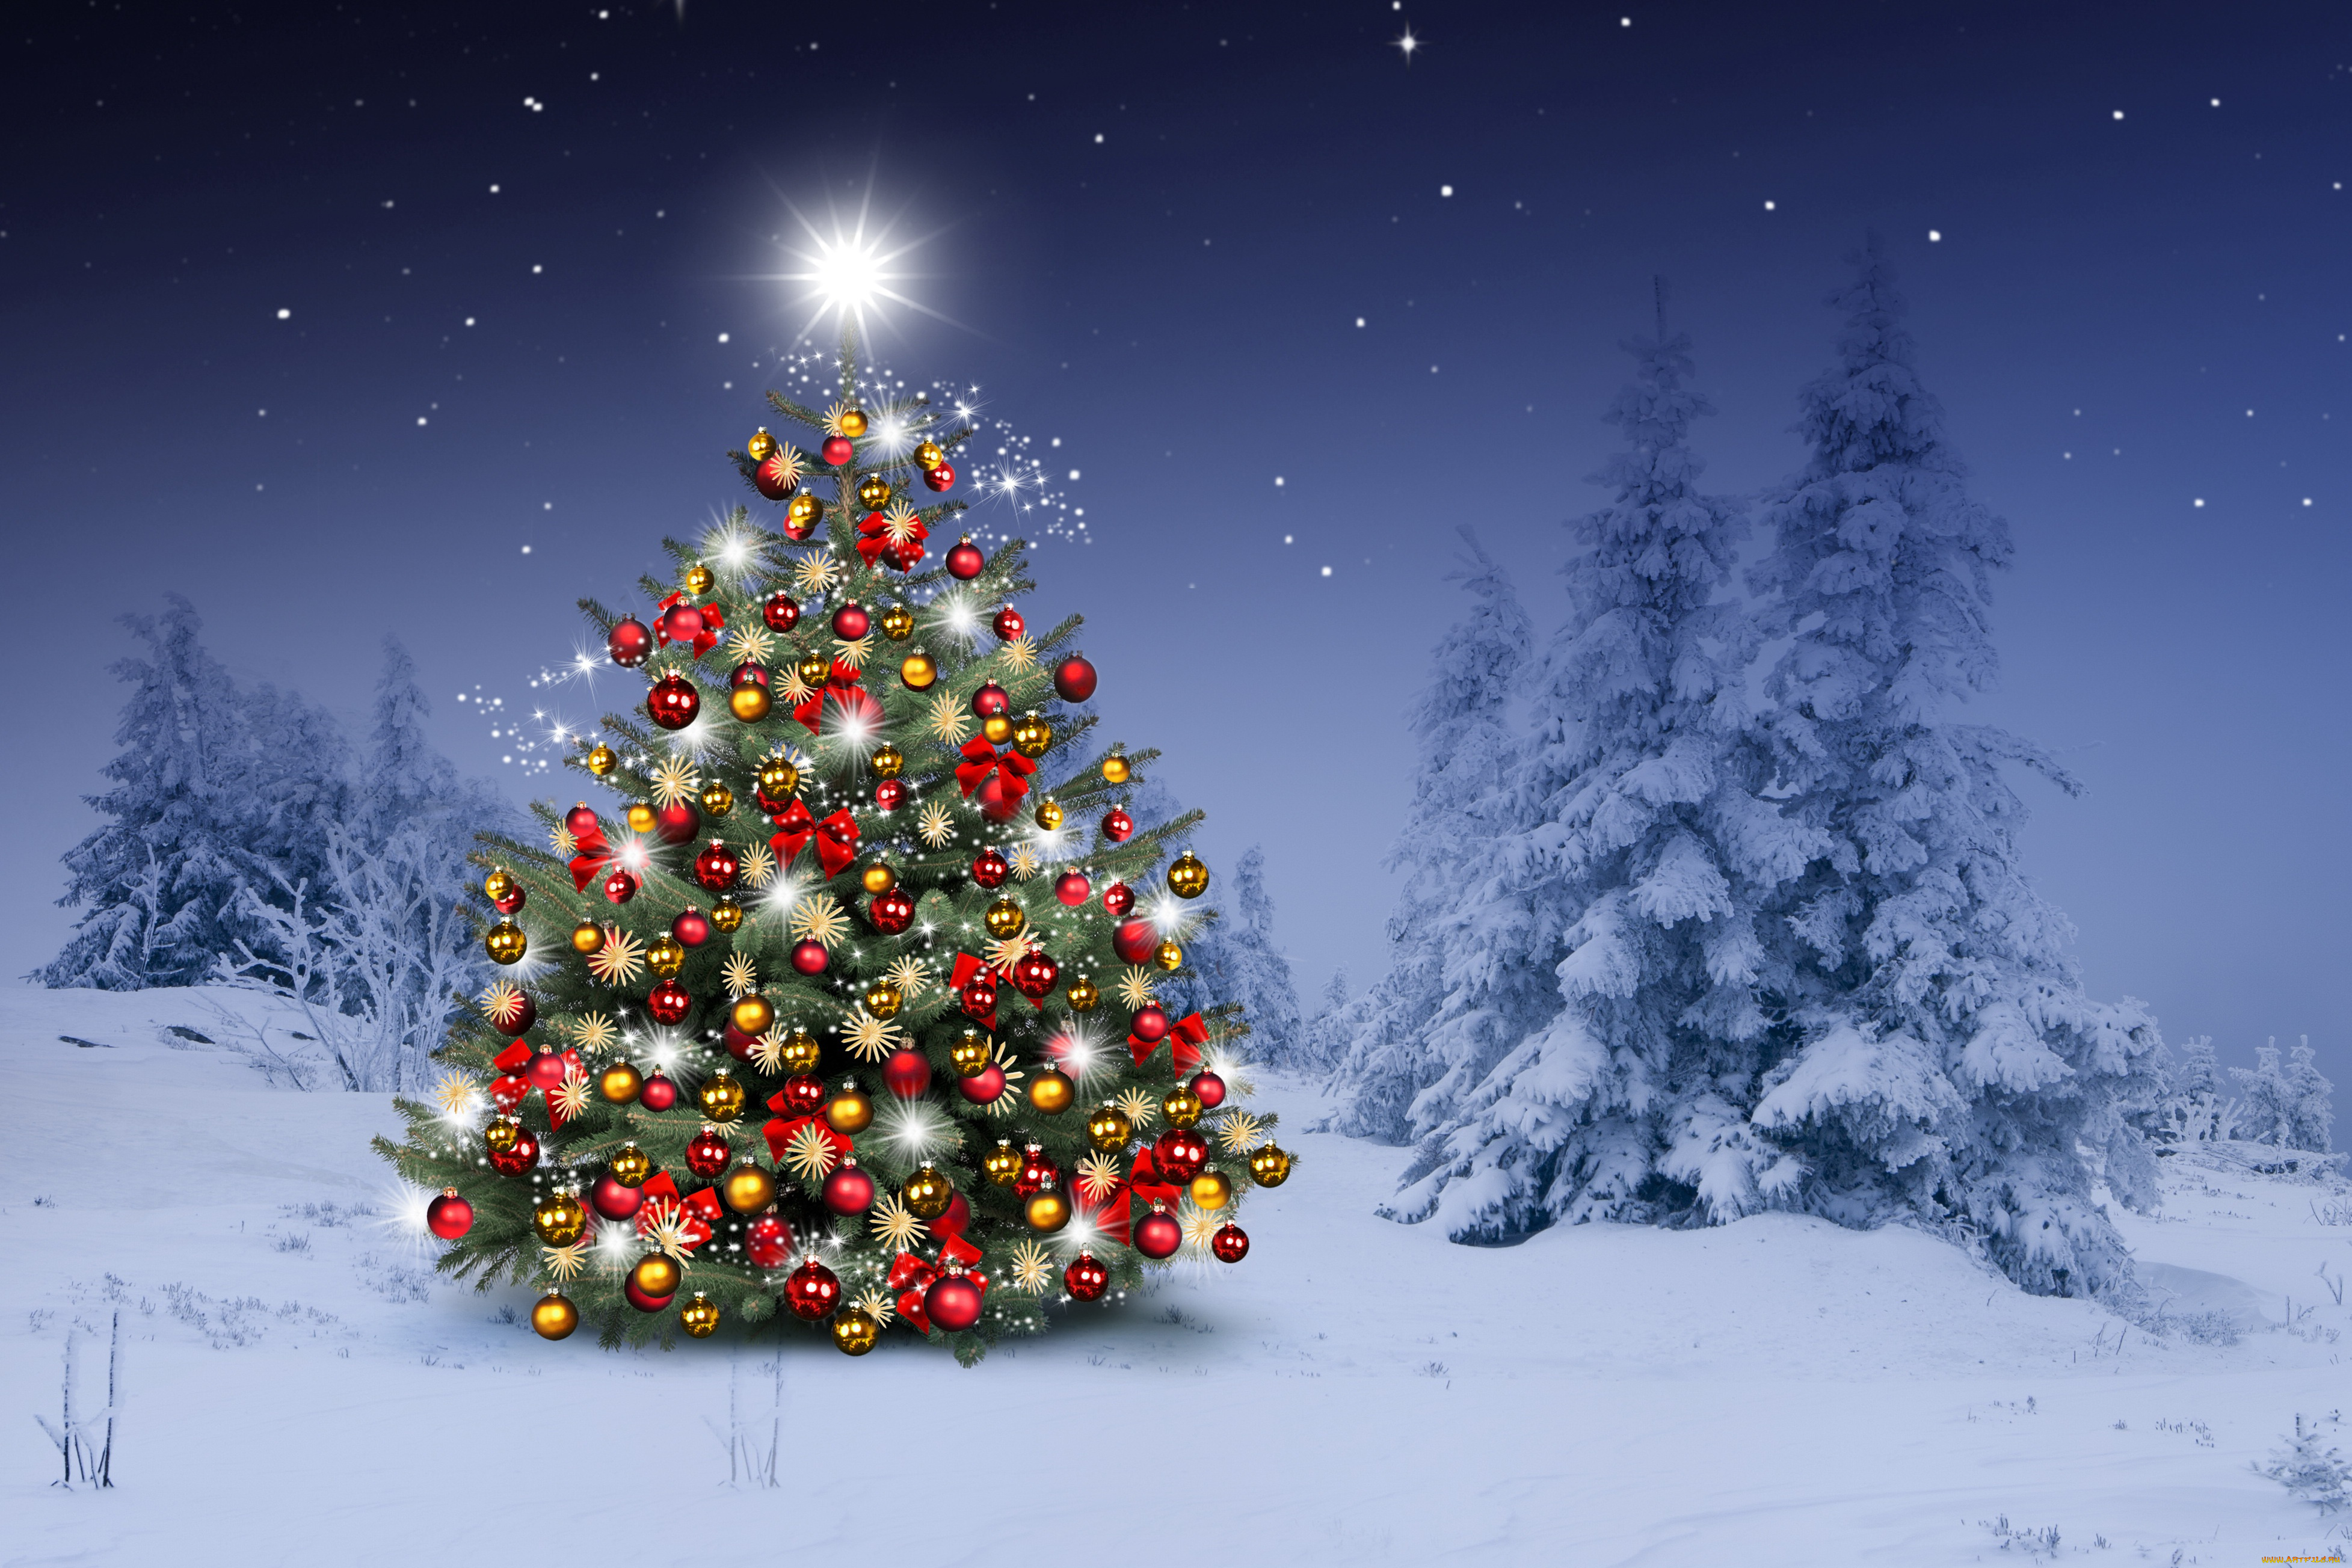 праздничные, Ёлки, новый, год, merry, christmas, новогодняя, елка, снежинки, winter, елки, украшения, рождество, xmas, snow, зима, tree, шары, night, снег, decoration, happy